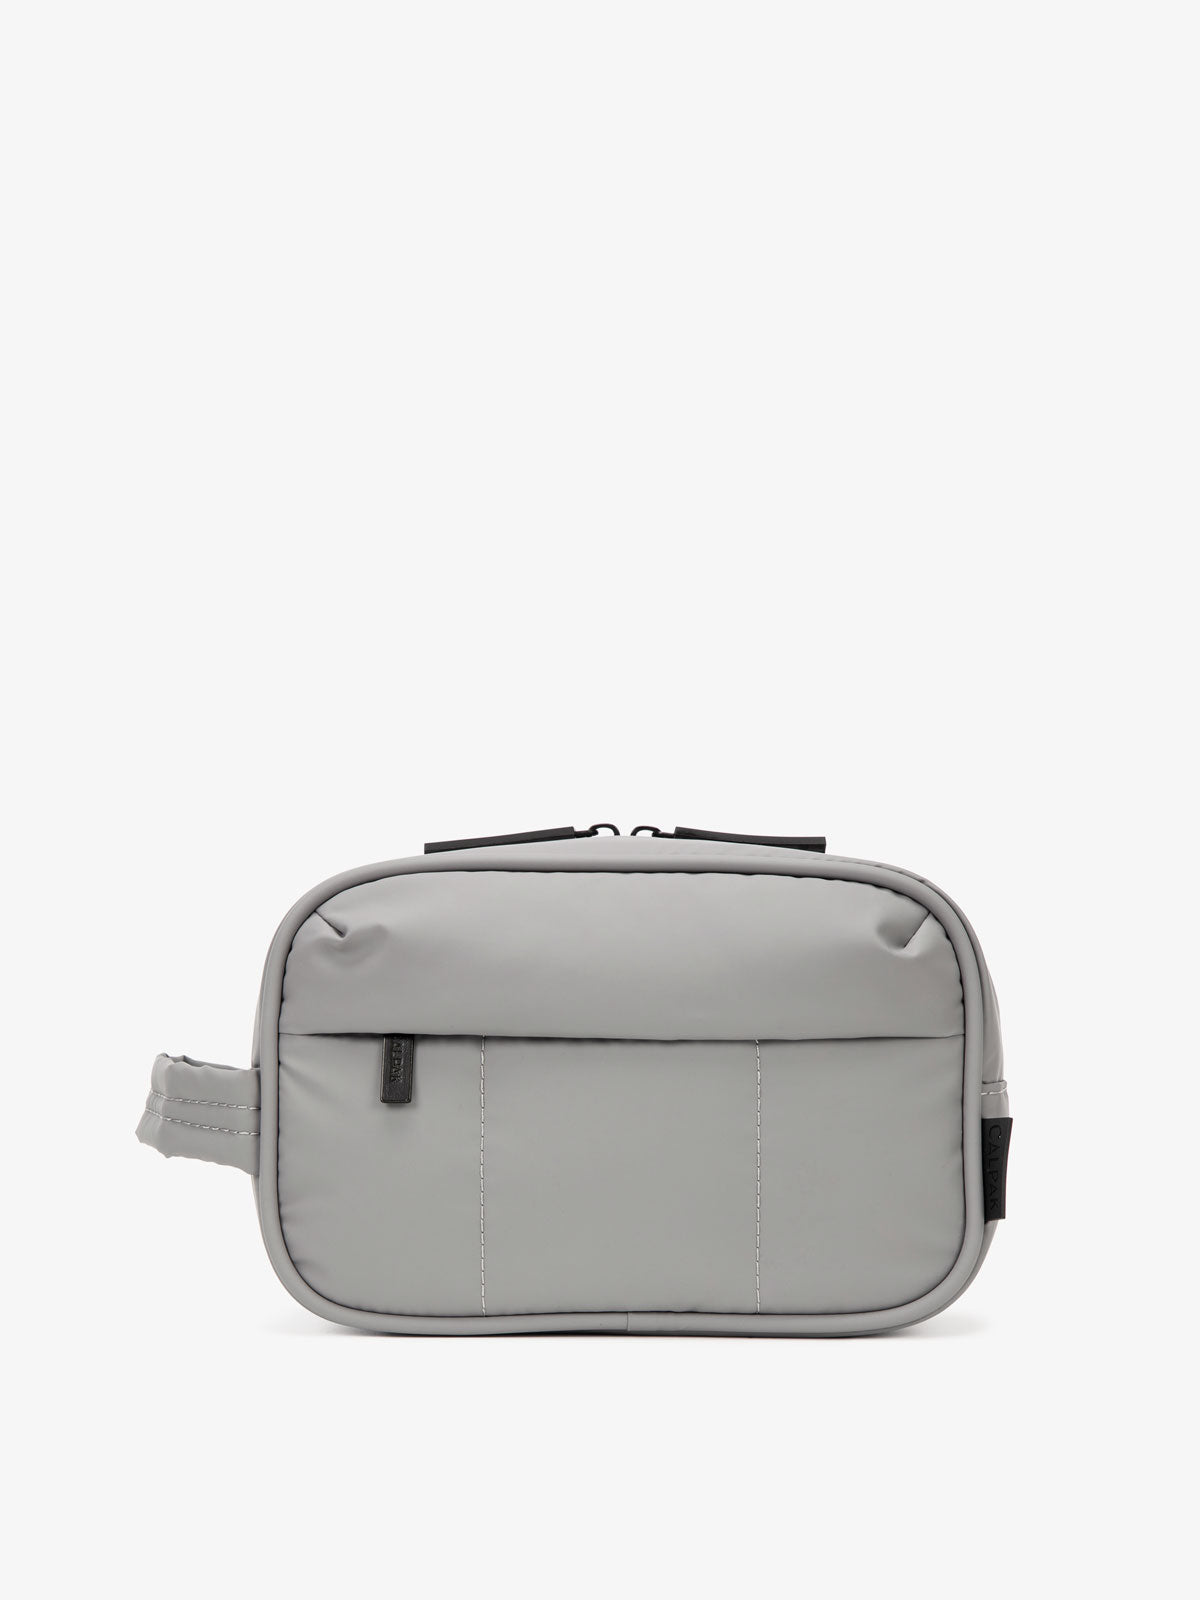 CALPAK Luka toiletry bag in grey